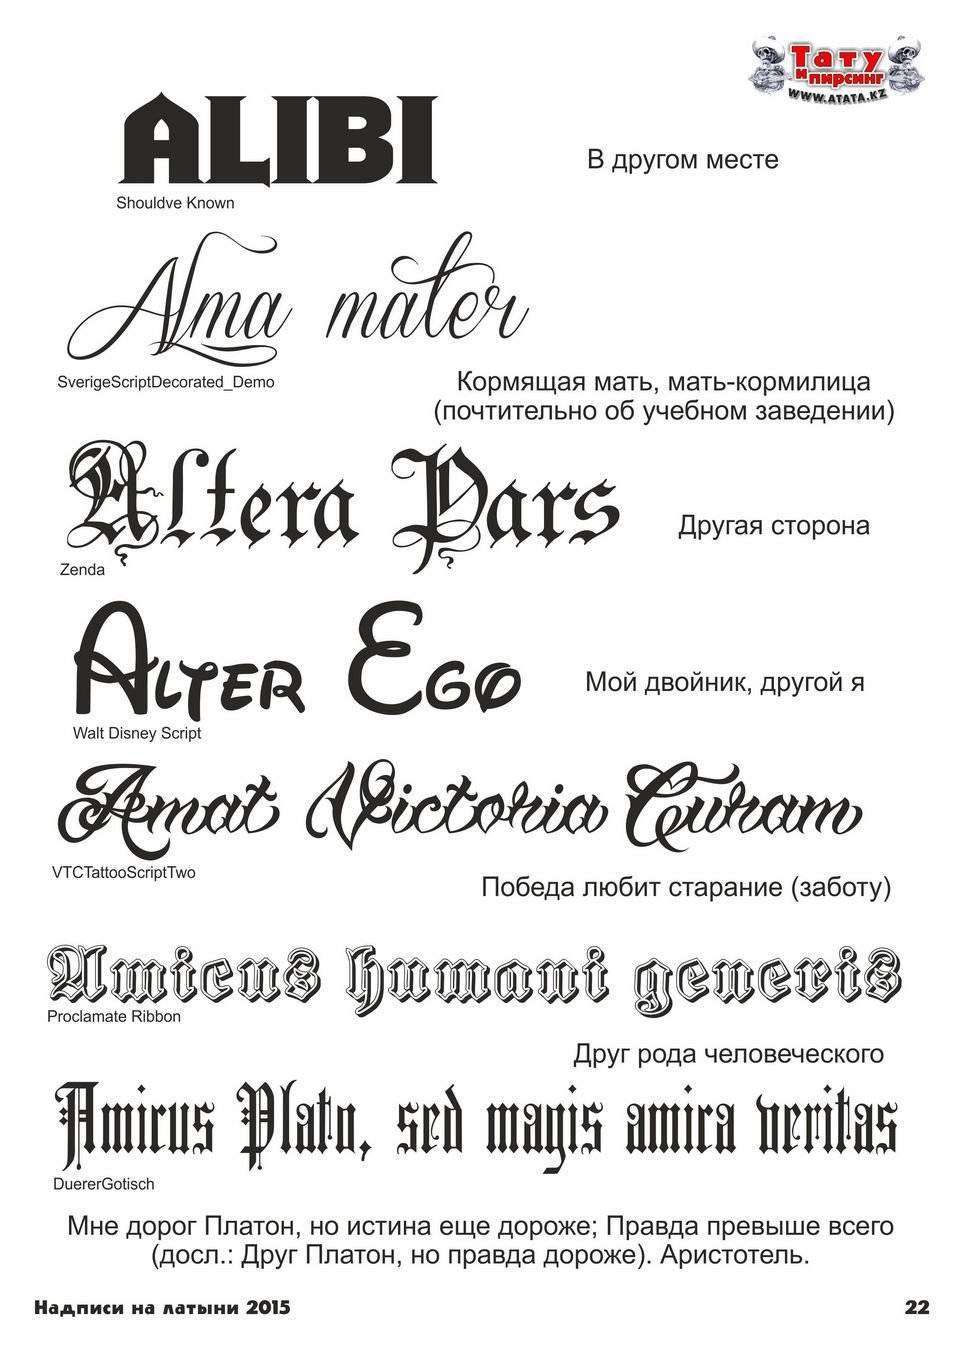 Надписи тату со смыслом и переводом для мужчин, девушек, на латинском, английском, французском, красивые со смыслом